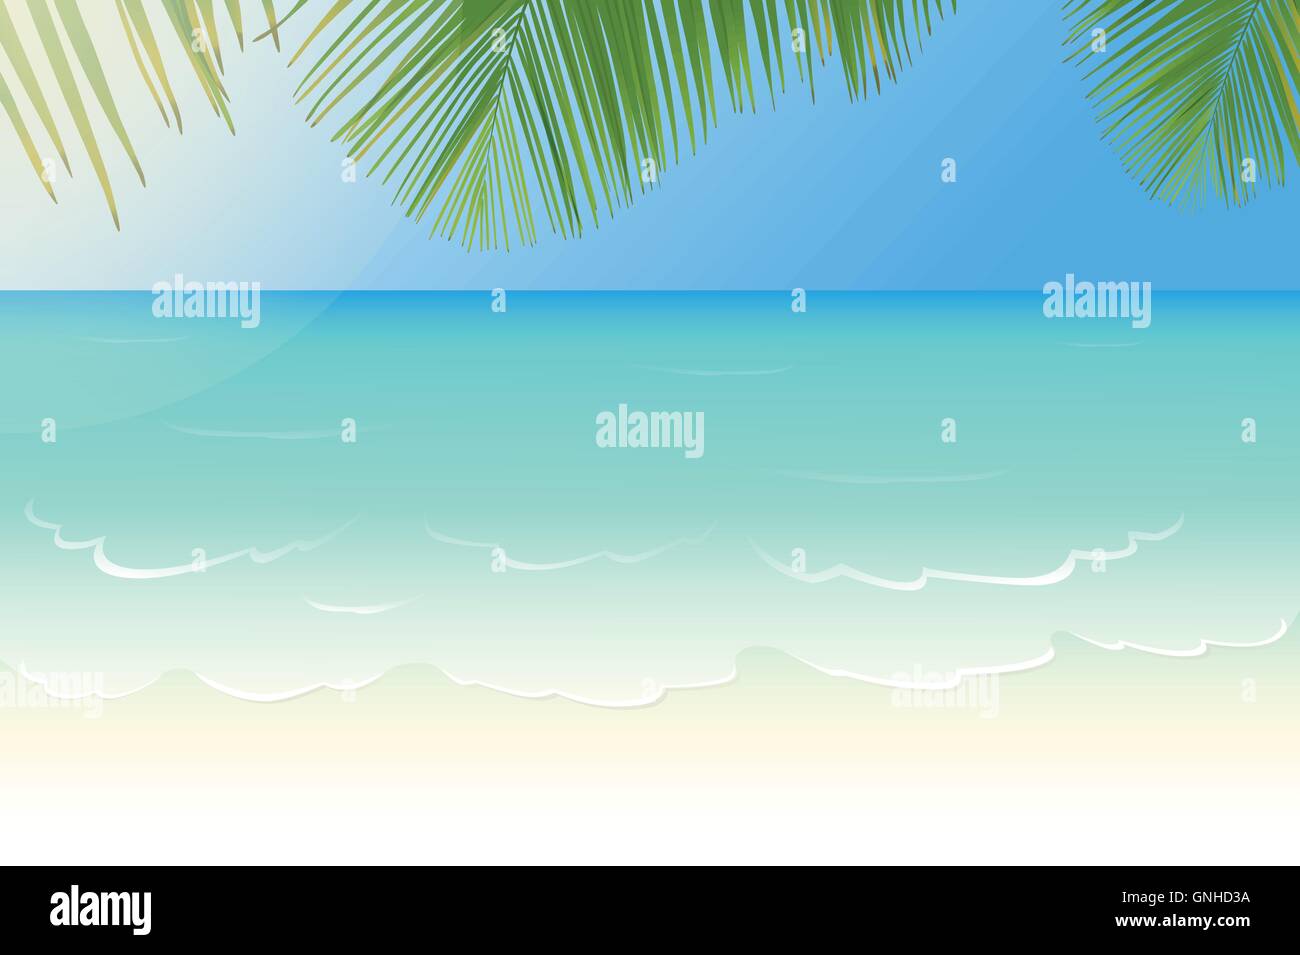 Plage de sable blanc aux eaux cristallines de la mer bleu et feuilles de palmier vector illustration Illustration de Vecteur